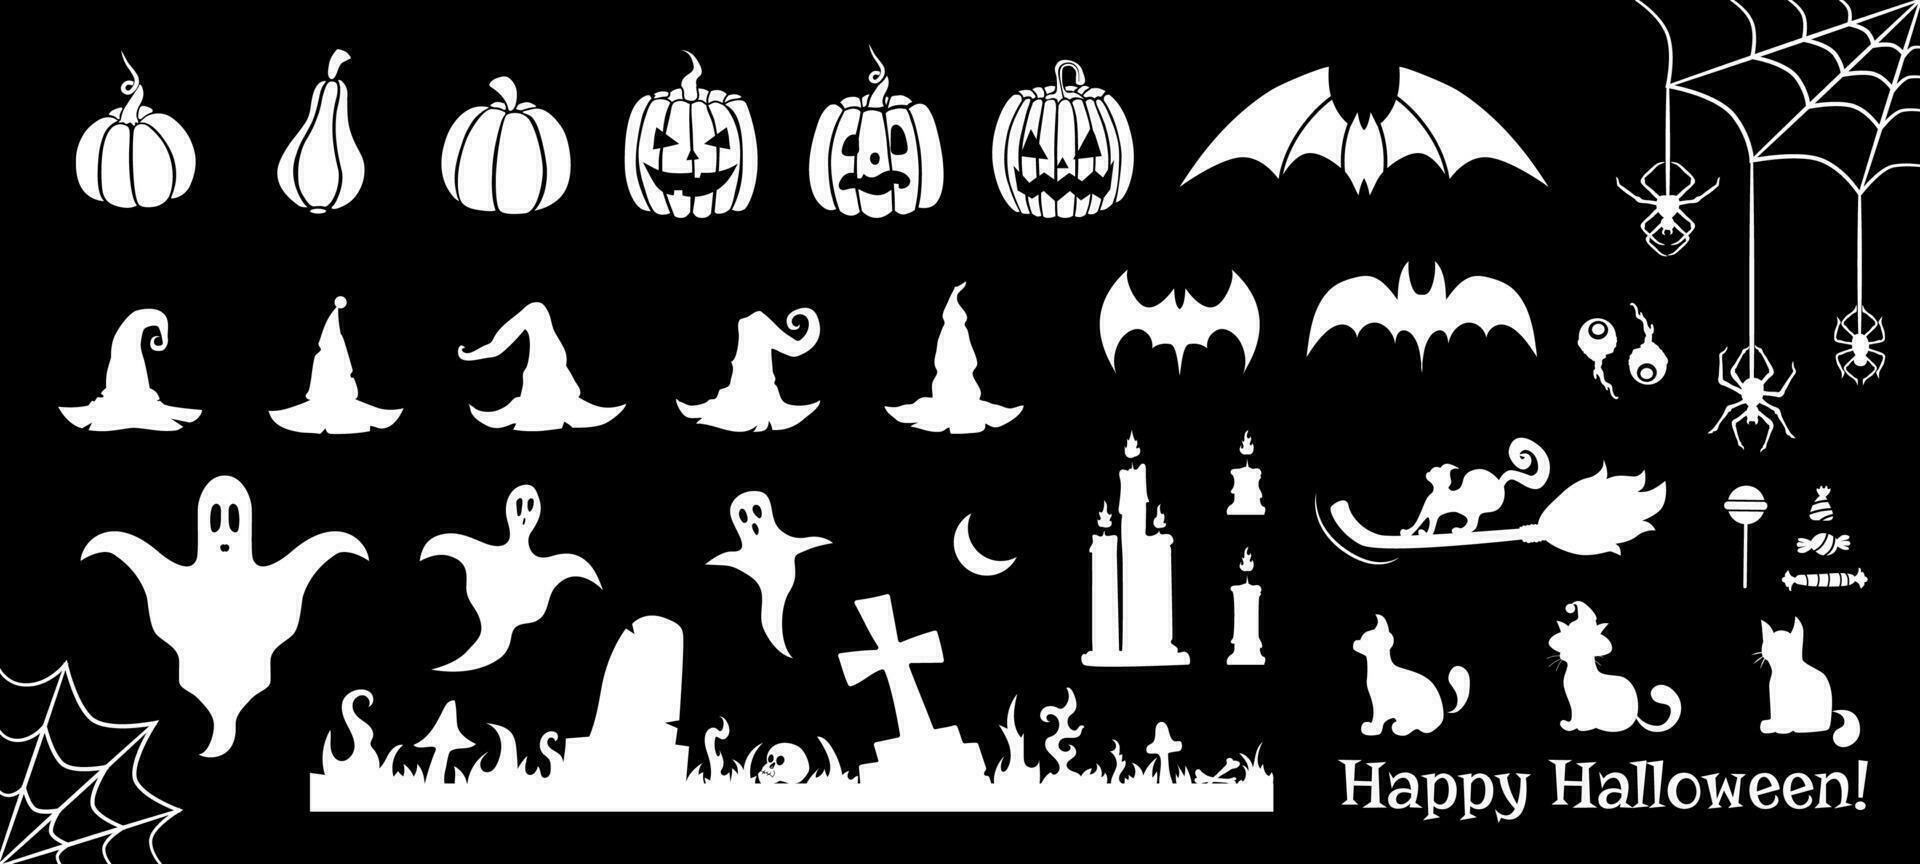 halloween decoratief wit elementen en silhouetten van pompoenen, heks hoeden, katten, kaarsen, spinnen en vleermuizen, vector decoraties.